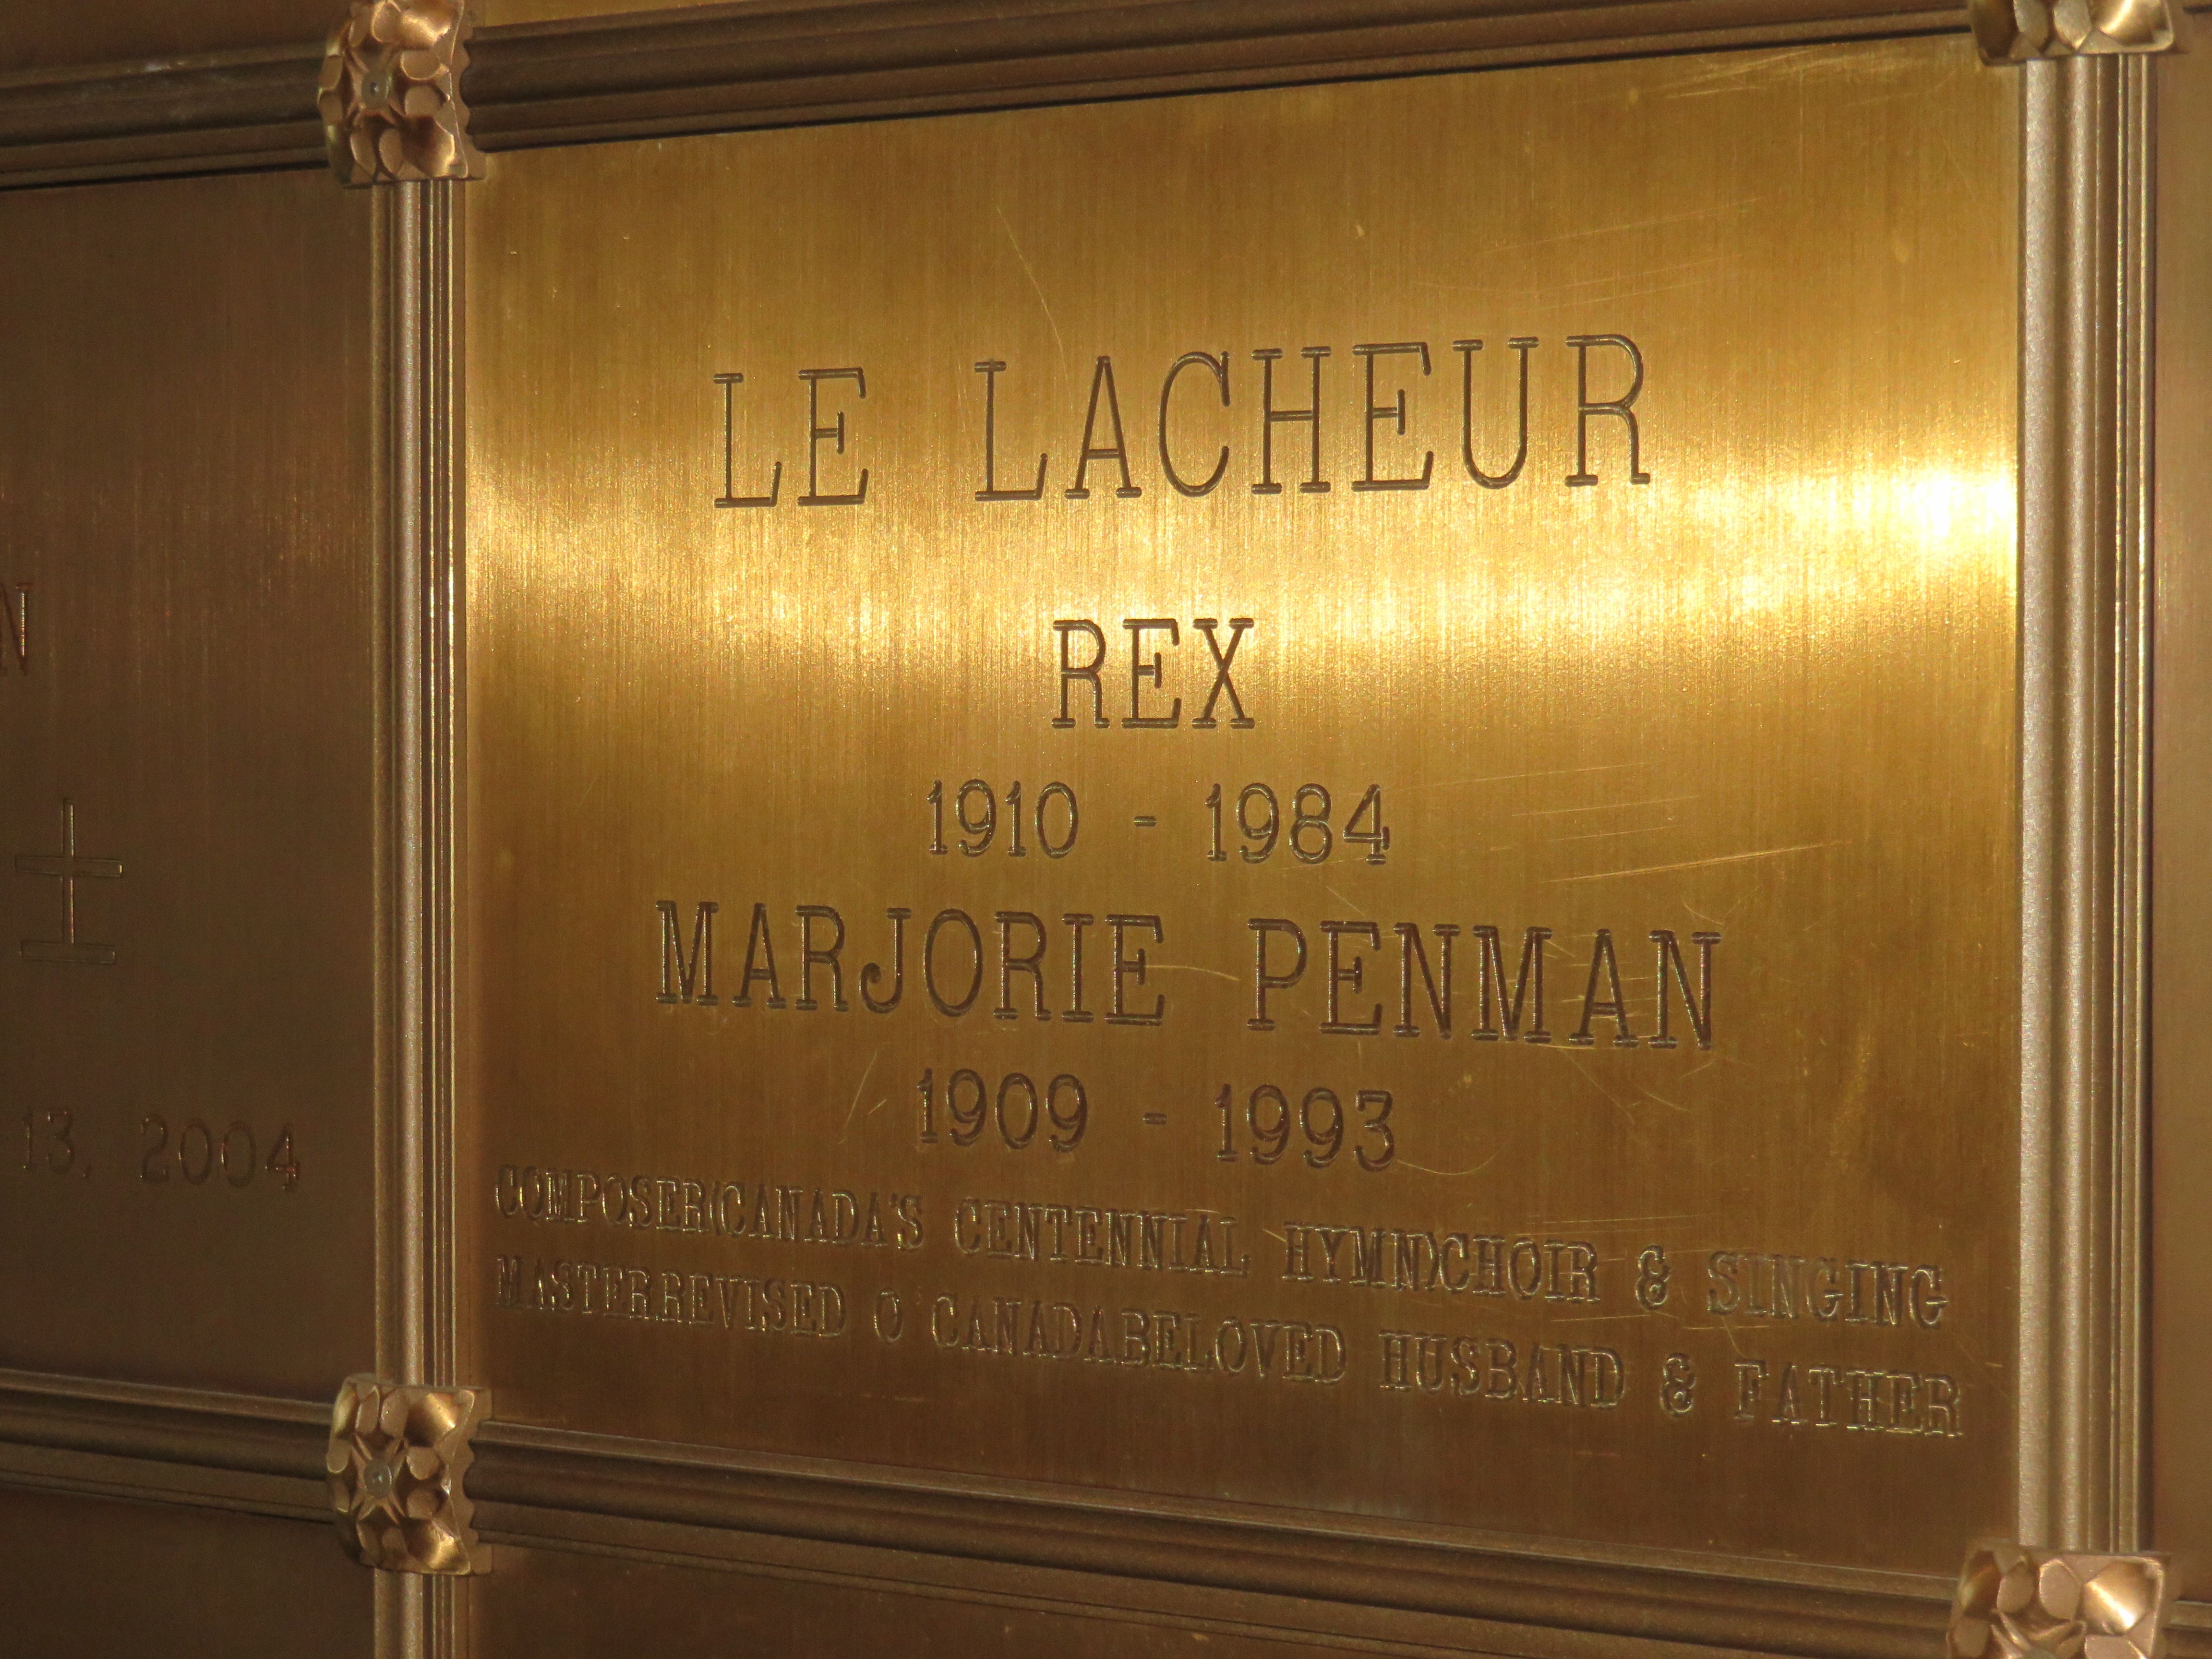 Rex plaque